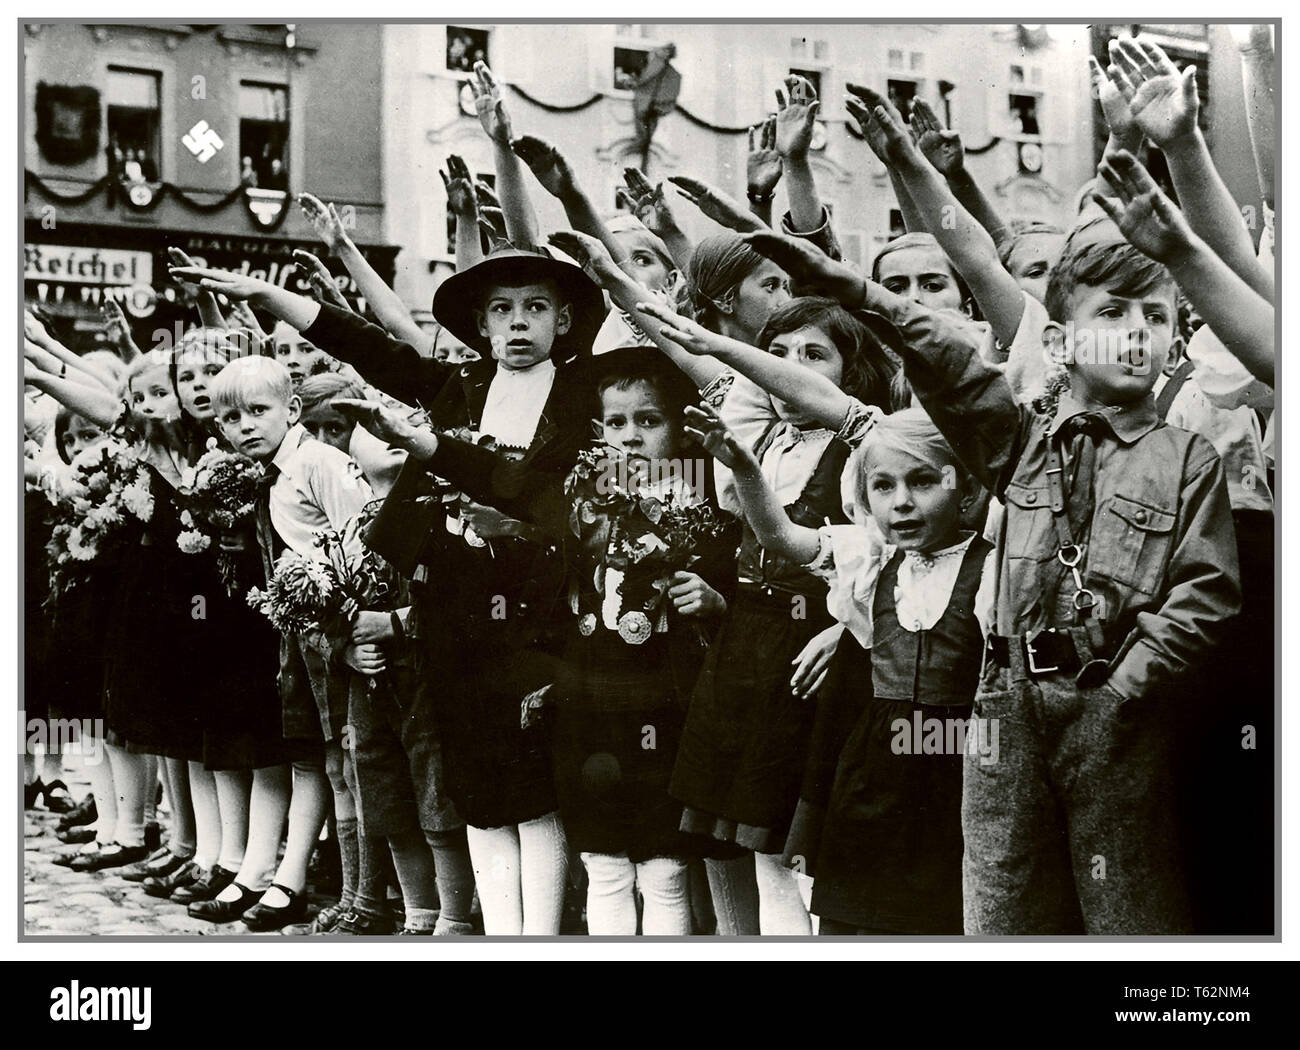 Enfants autrichiens Heil Hitler SALUTE 1930 image de la propagande nazie, groupe autrichien Adolf Hitler accueillant des enfants avec des Heil Hitler salue avec bras levés. Croix gammée sur le mur en arrière-plan des Sudètes Banque D'Images